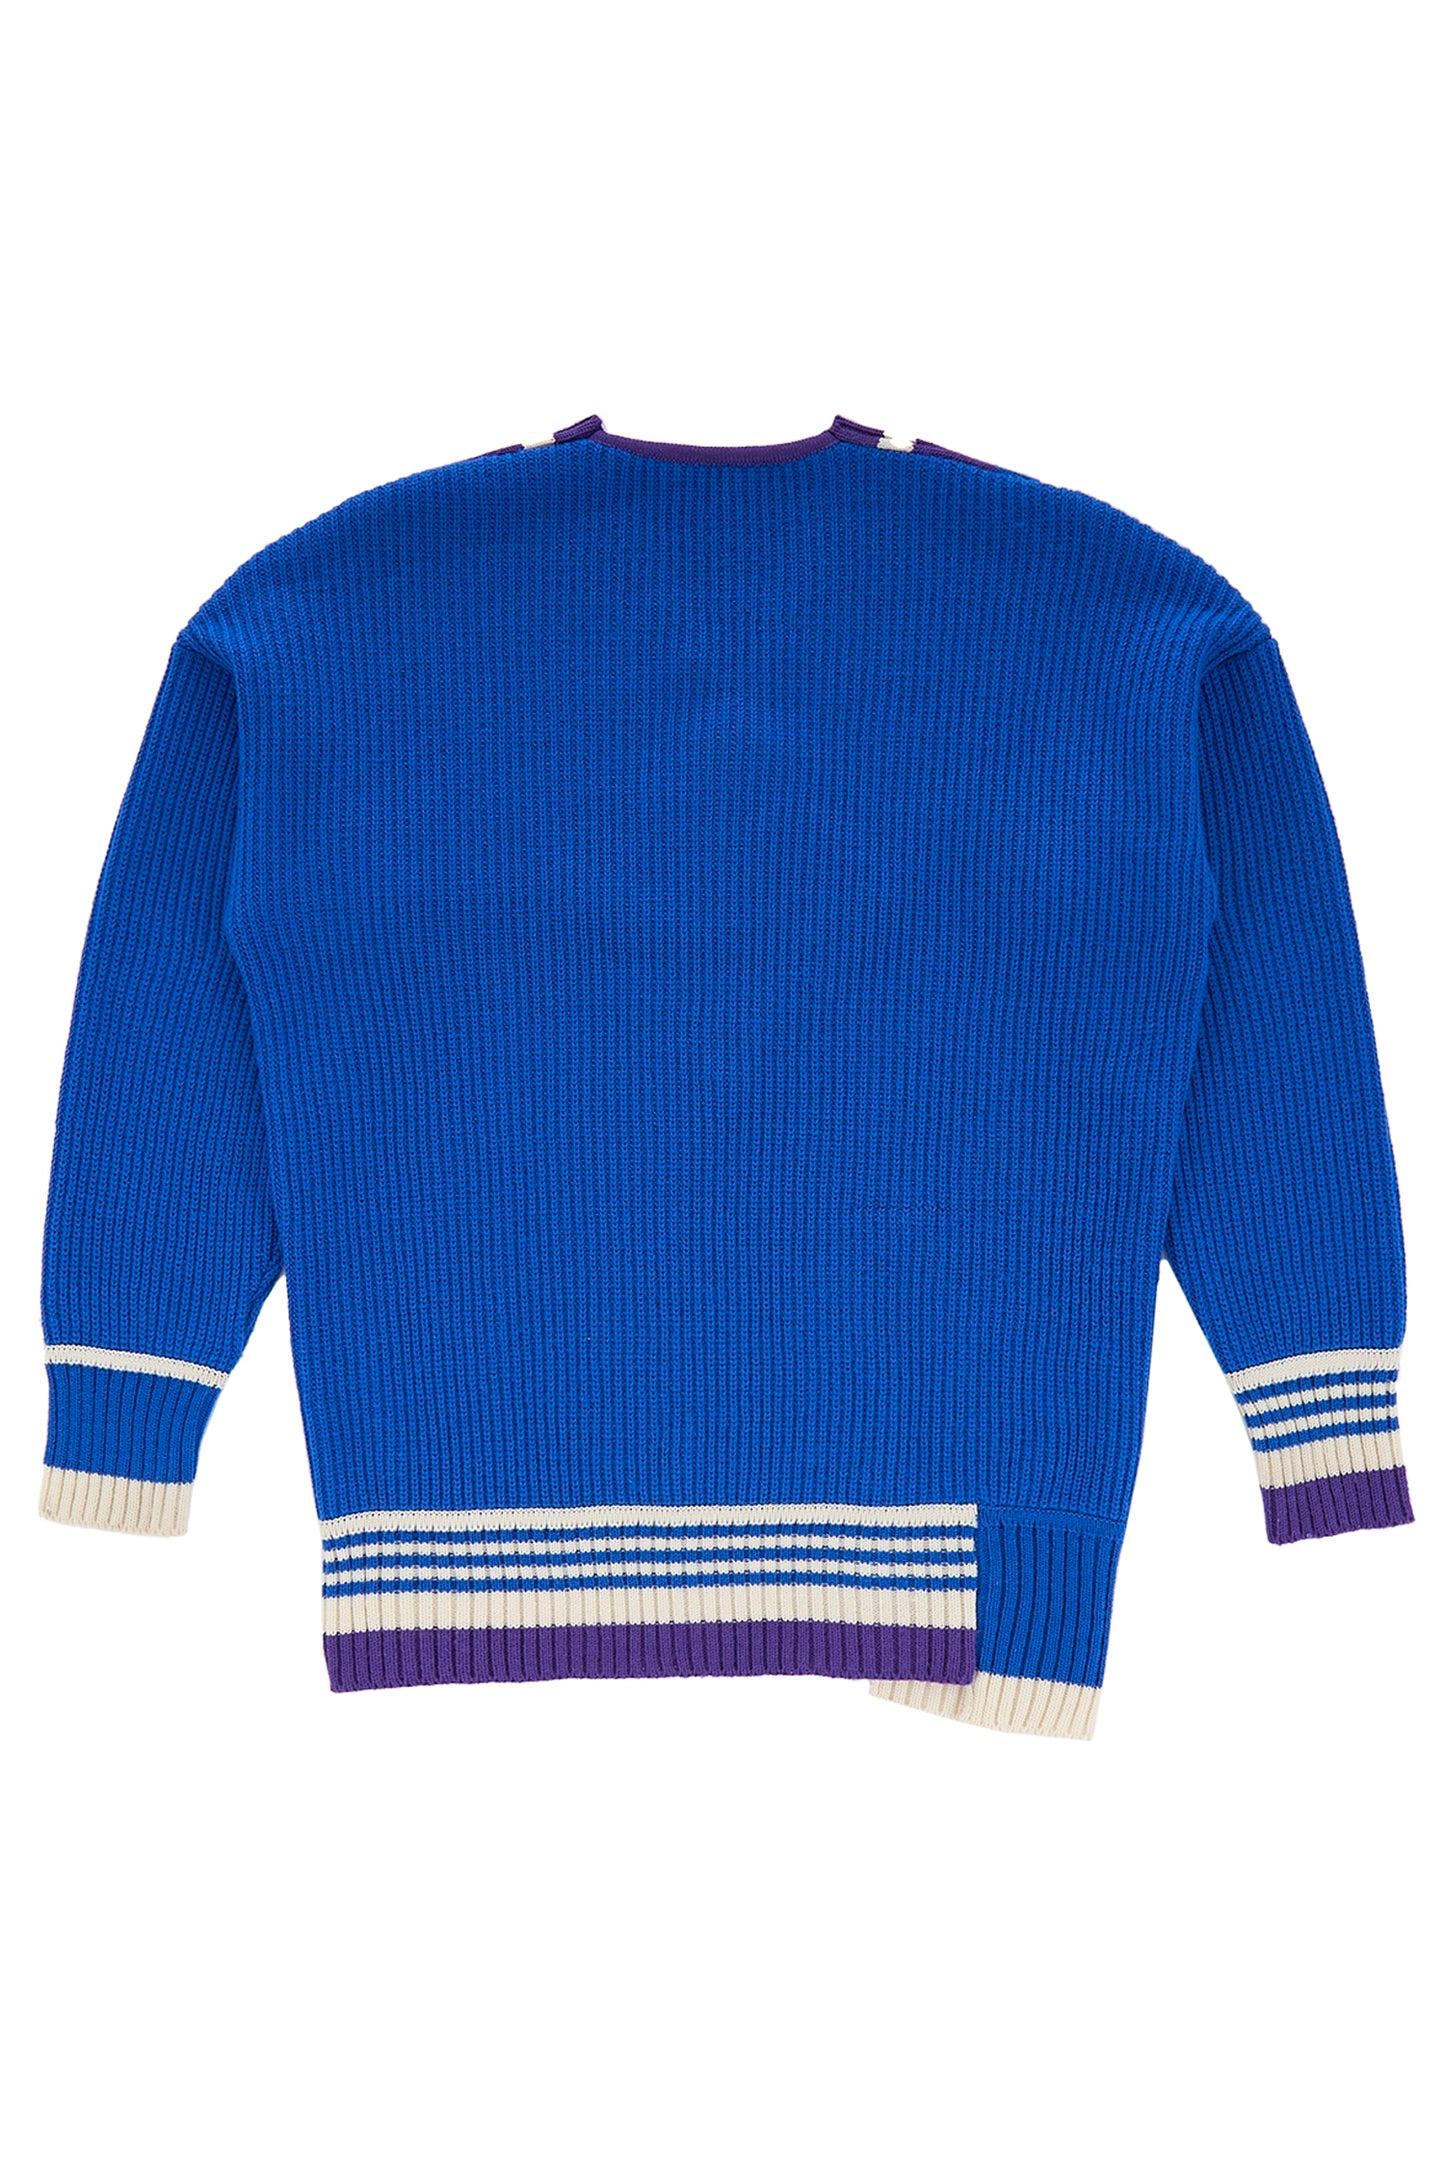 Oversized Knitwear V Neck - Blue/Cream/Violet